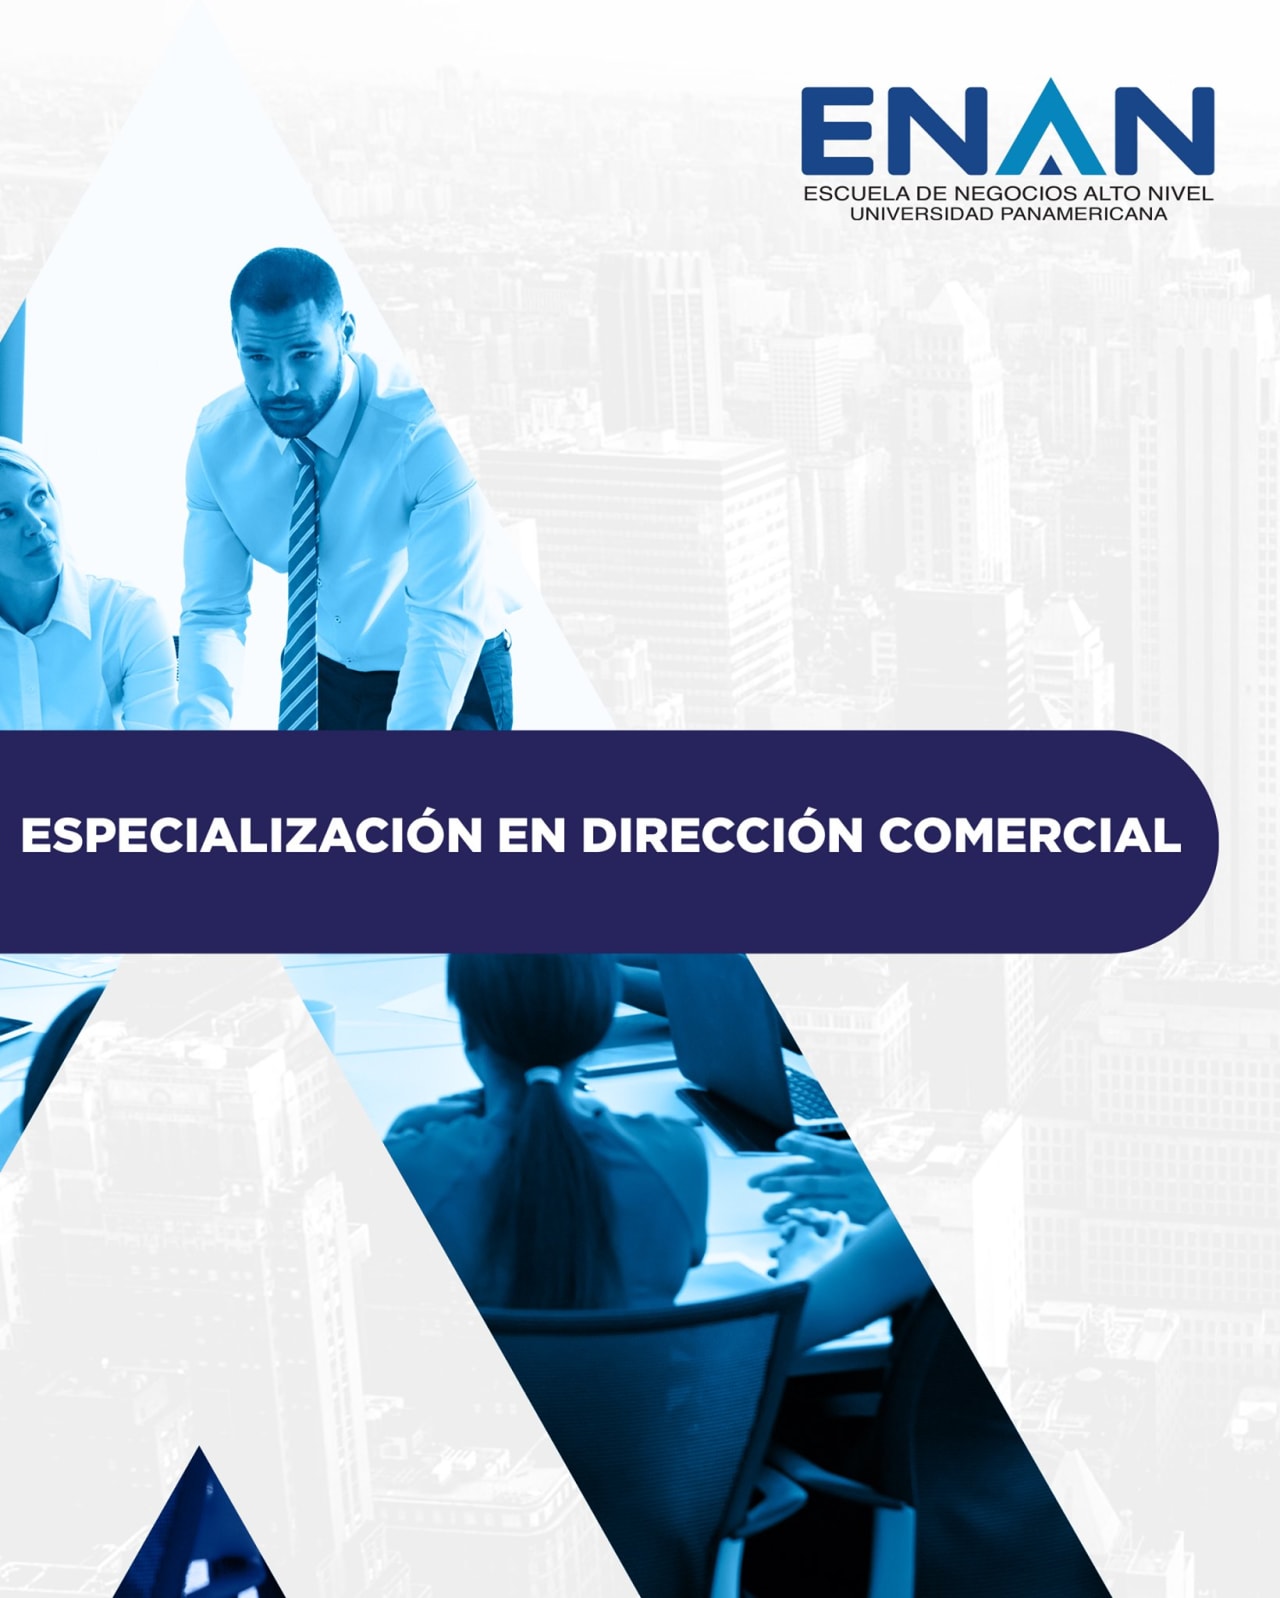 Escuela de Negocios Alto Nivel - Universidad Panamericana de Guatemala Especialización en Dirección Comercial